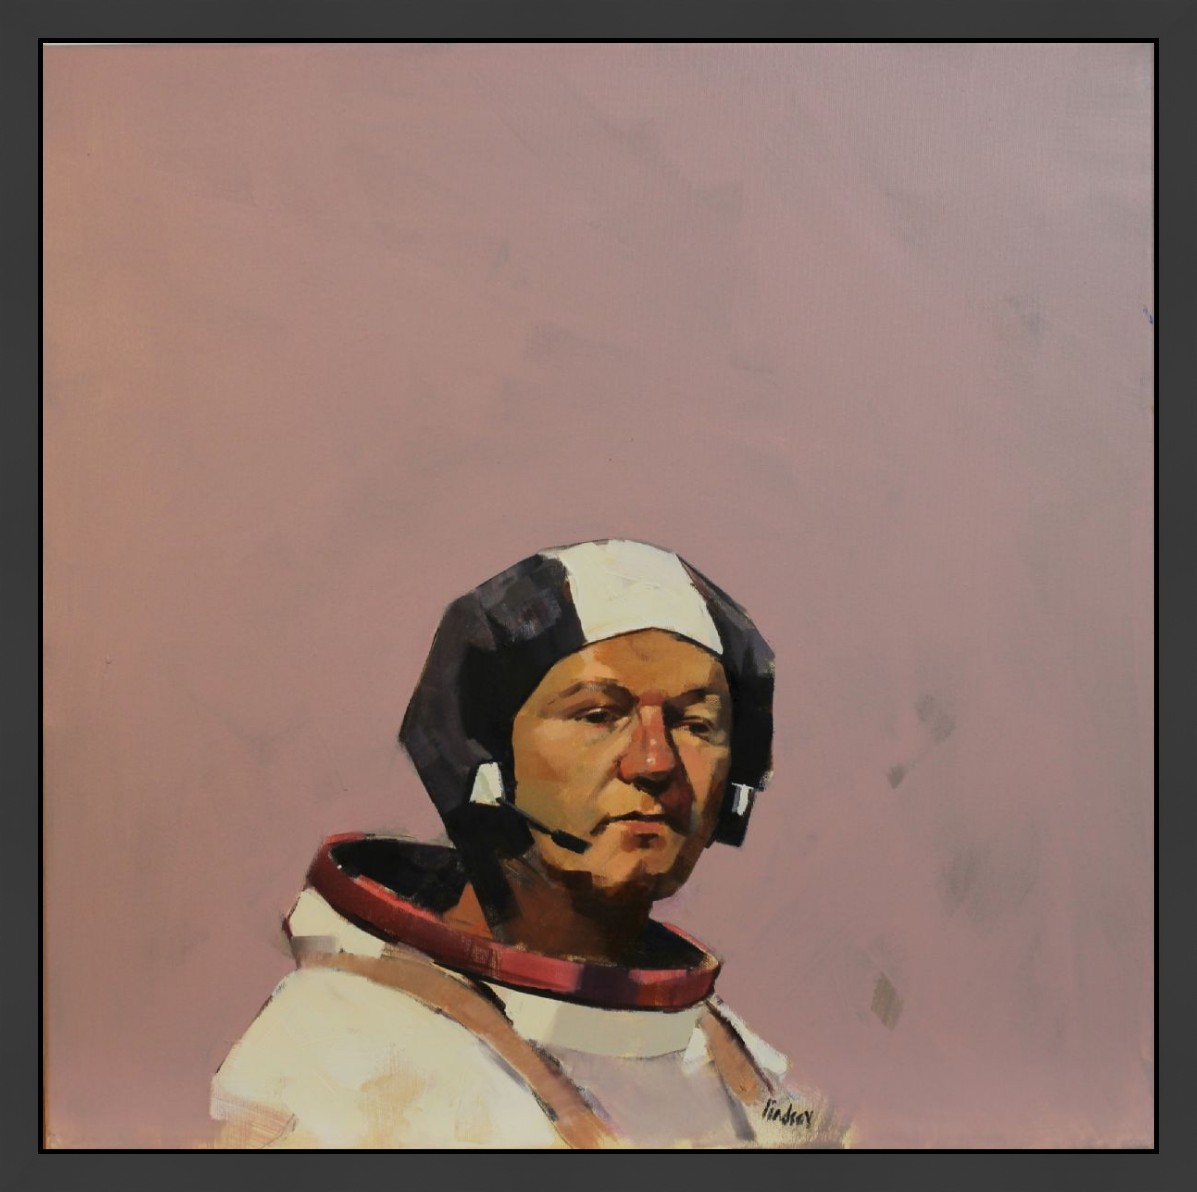 Self portrait as space cadet